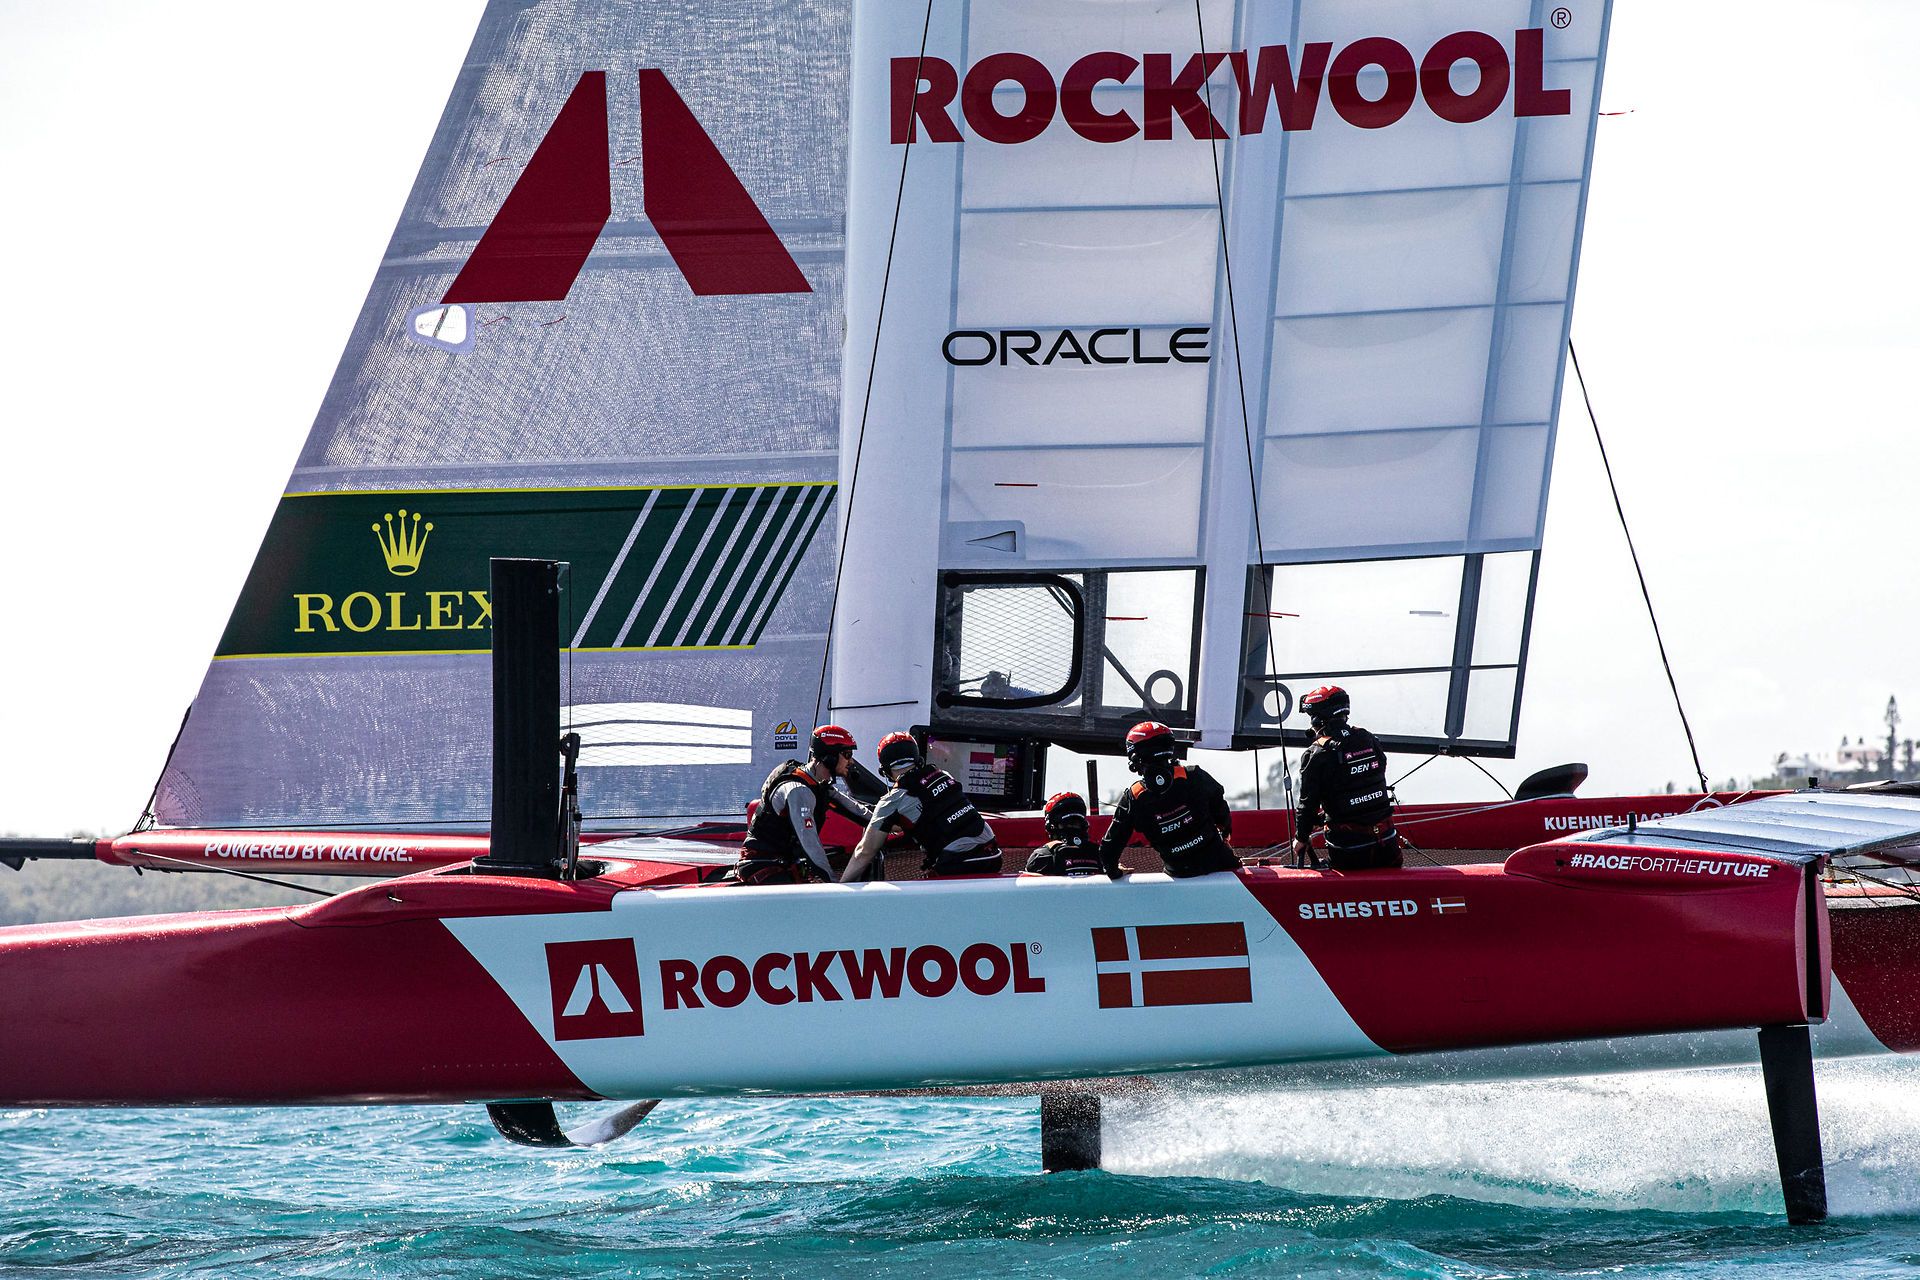 Rockwool er sponsor for det danske hold i SailGP. Ved konkurrencen i Øresund havde besætningen kronprins Frederik med ombord. Billedet er fra et tidligere arrangement. Foto: Brian Carlin/APPR/Ritzau Scanpix